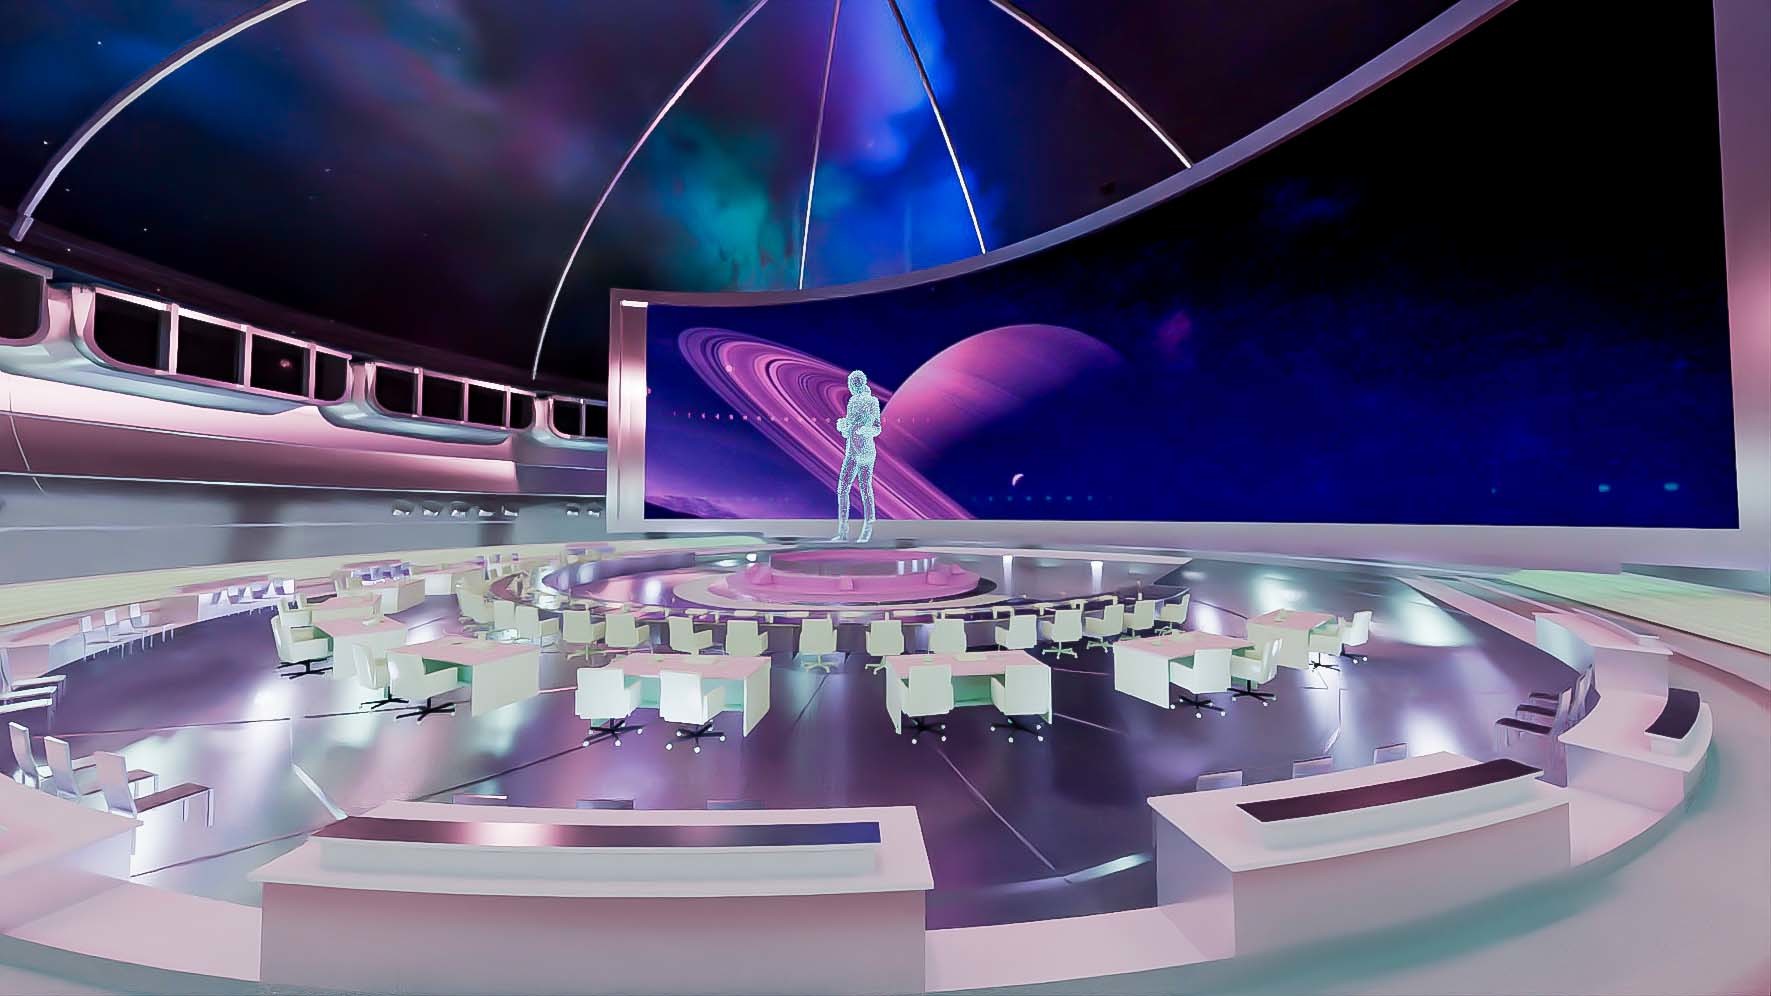 这是一张展现未来风格室内设计的图片，中心有人形雕塑，四周是现代座椅，背景为太空主题，整体色调紫罗兰色调，科技感十足。